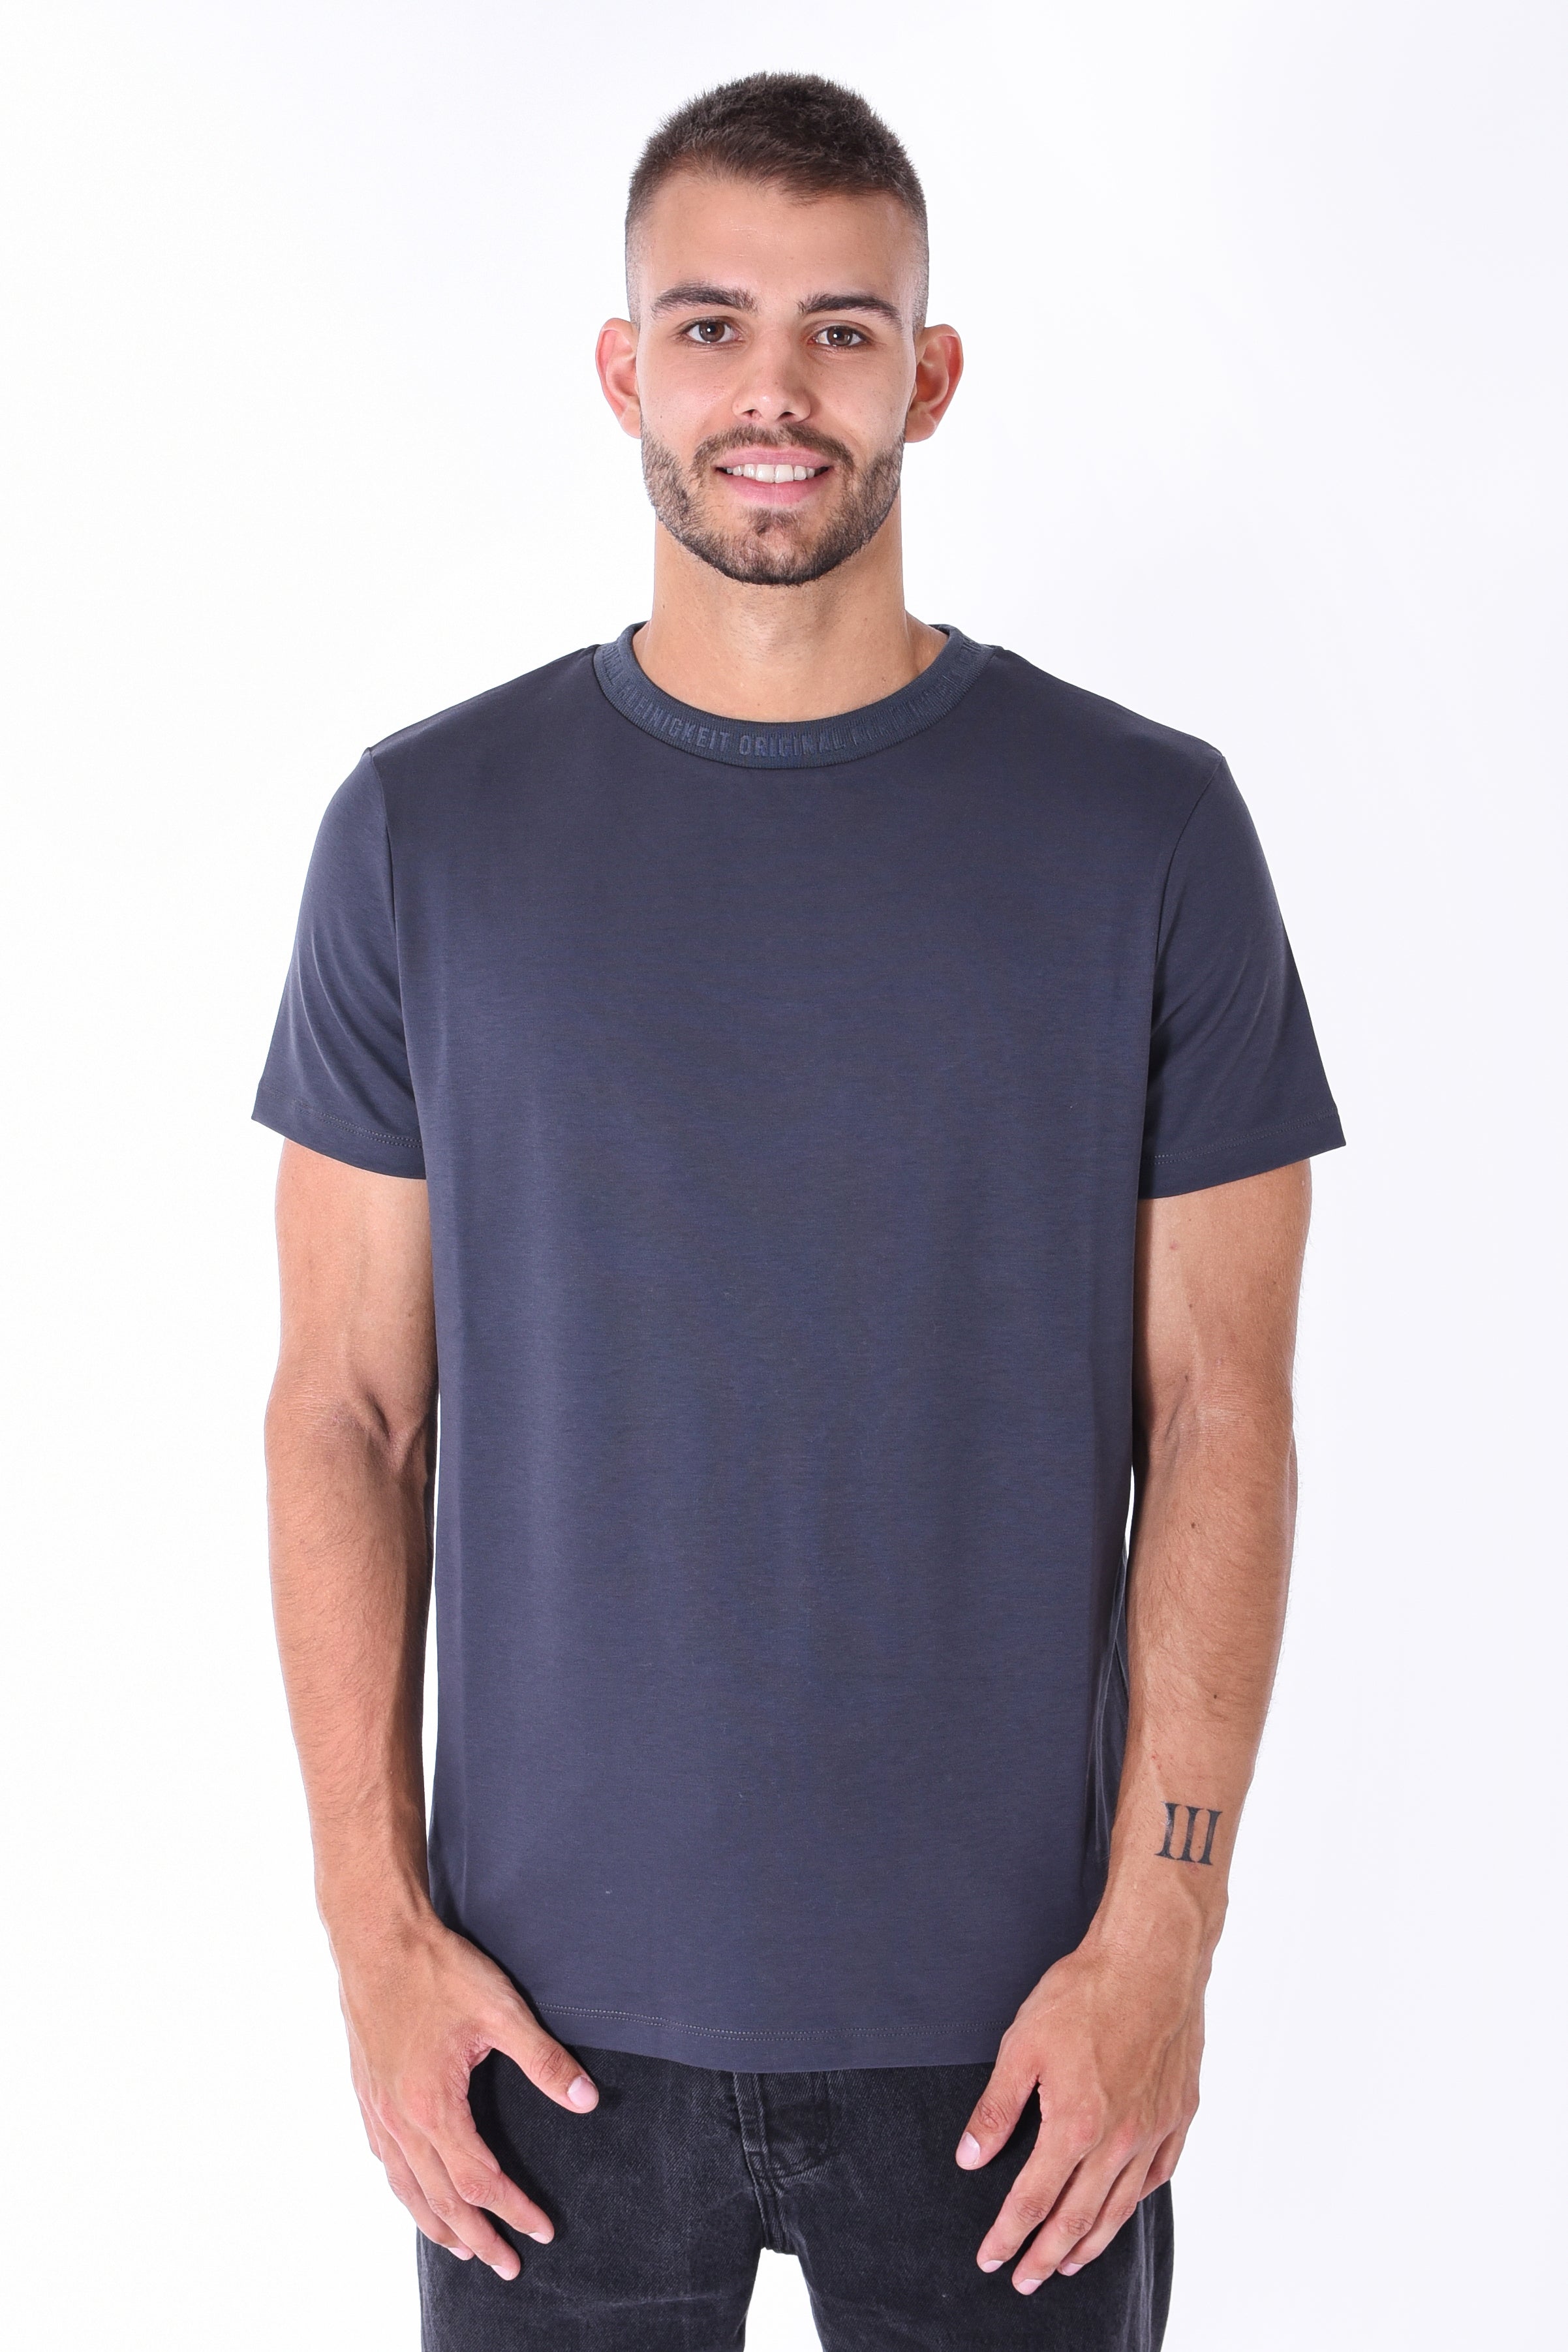 Kleinigkeit | T-Shirt Roundcut "Unterragendes Shirt" | aspahlt grey